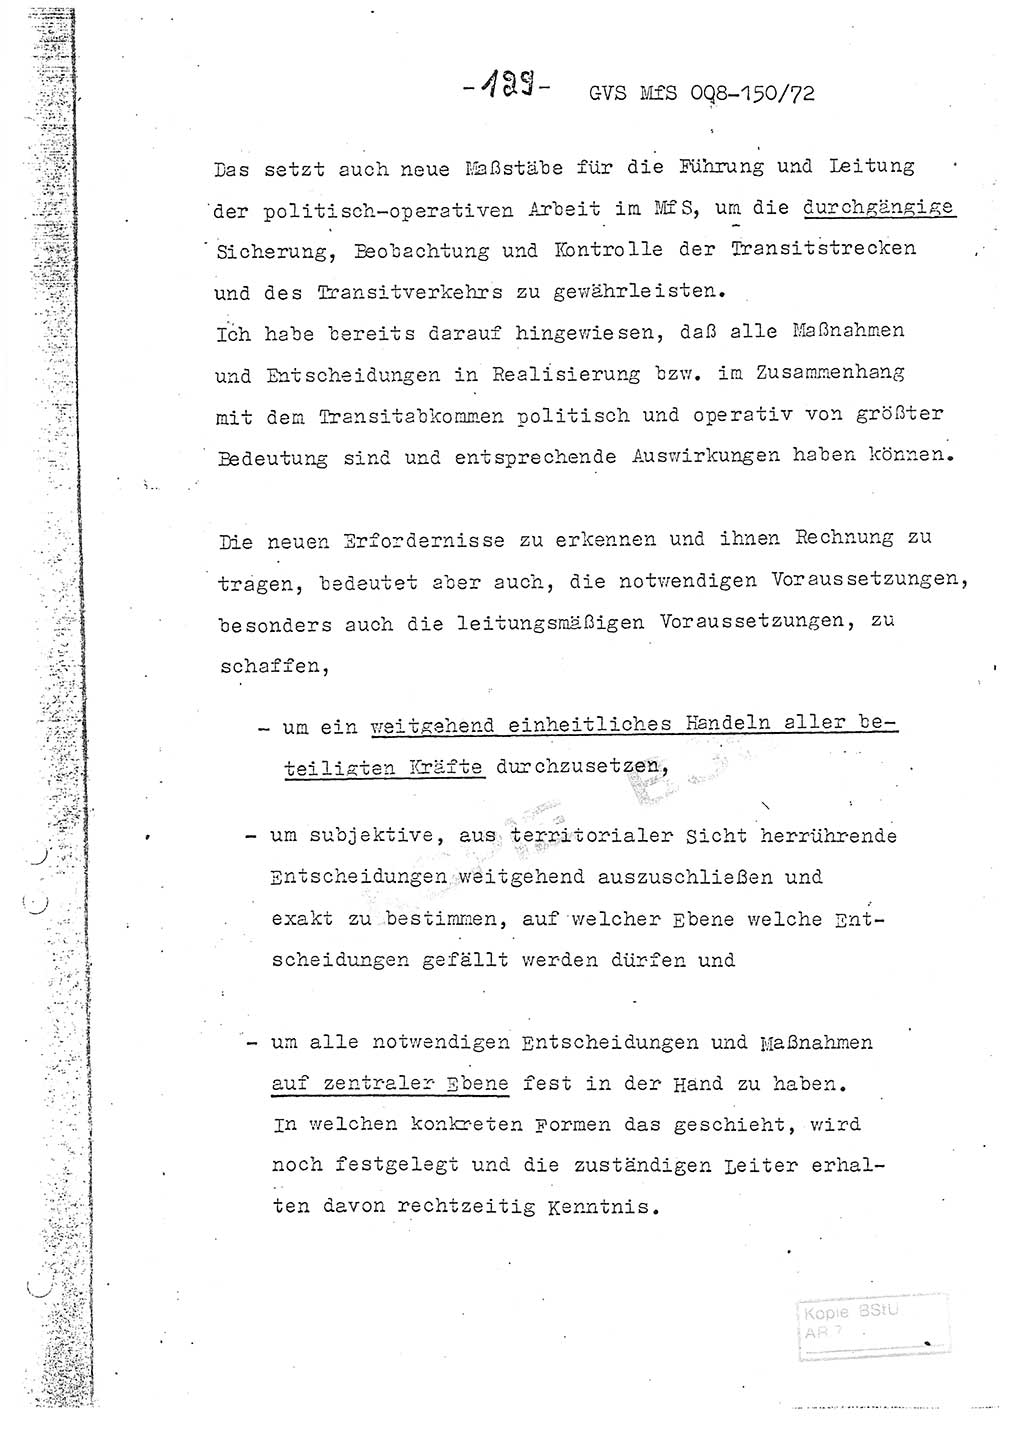 Referat (Entwurf) des Genossen Minister (Generaloberst Erich Mielke) auf der Dienstkonferenz 1972, Ministerium für Staatssicherheit (MfS) [Deutsche Demokratische Republik (DDR)], Der Minister, Geheime Verschlußsache (GVS) 008-150/72, Berlin 25.2.1972, Seite 129 (Ref. Entw. DK MfS DDR Min. GVS 008-150/72 1972, S. 129)